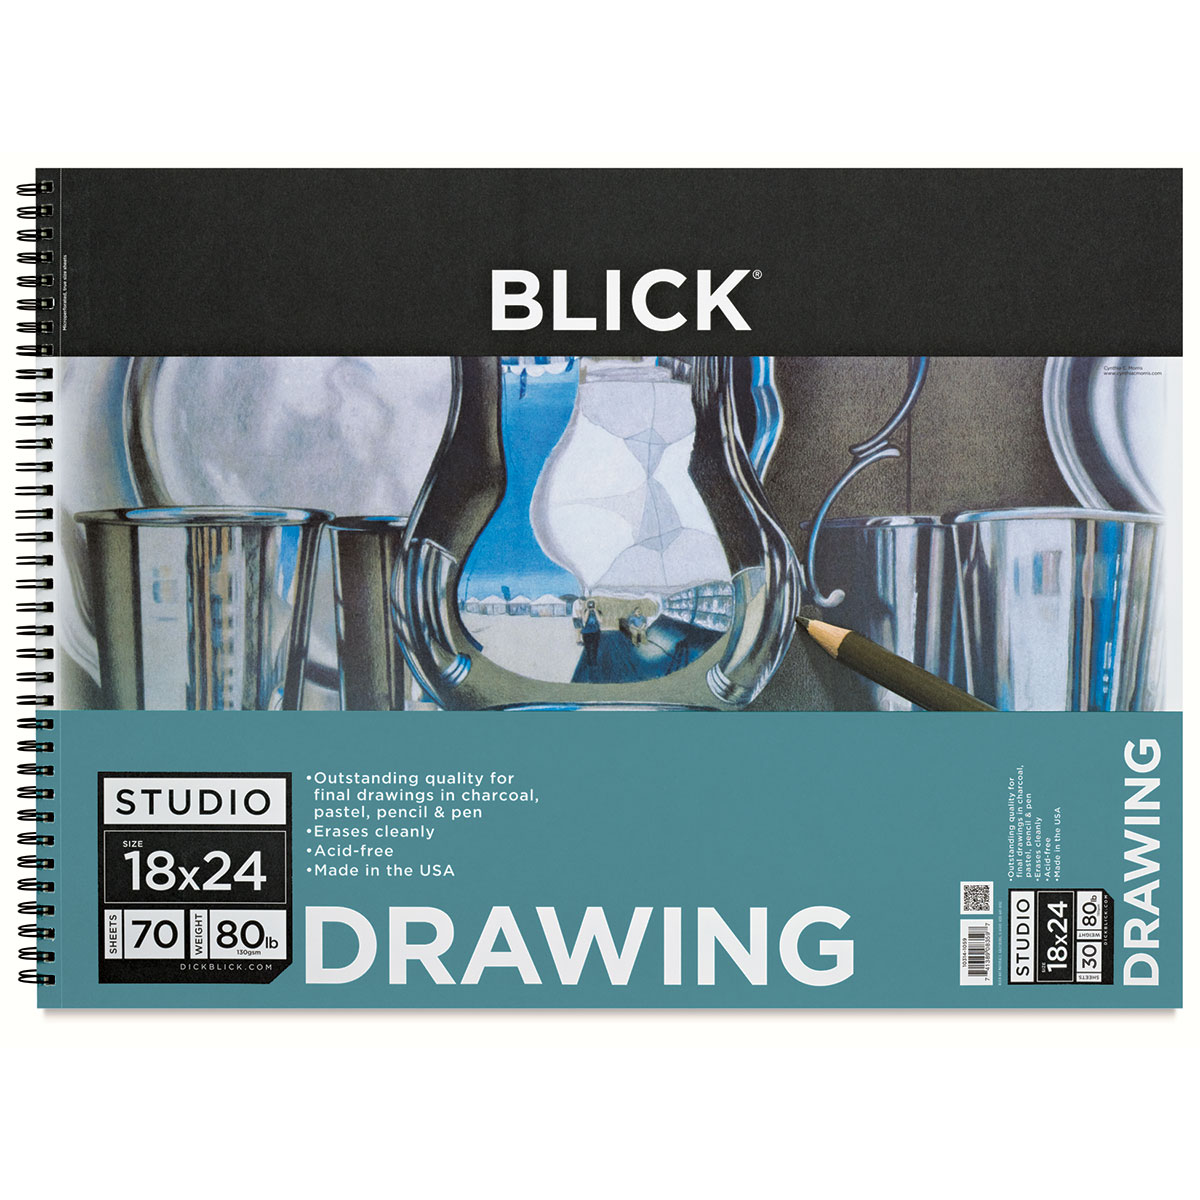 Blick Studio Sketch Pad - 8-1/2 x 11, 100 Sheets